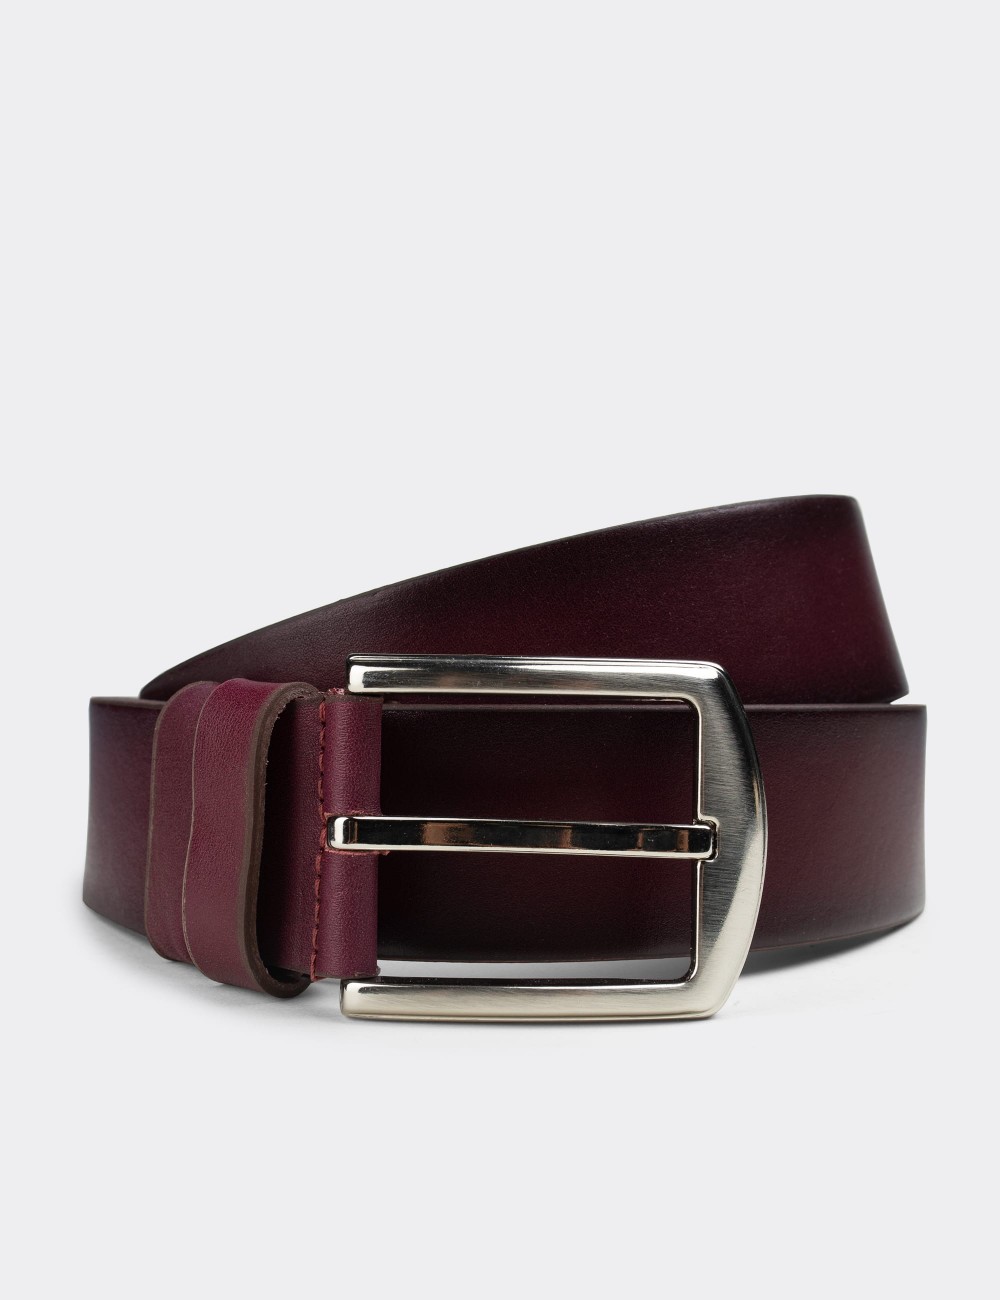  Leather Burgundy Men's Belt - K0105MBRDW01